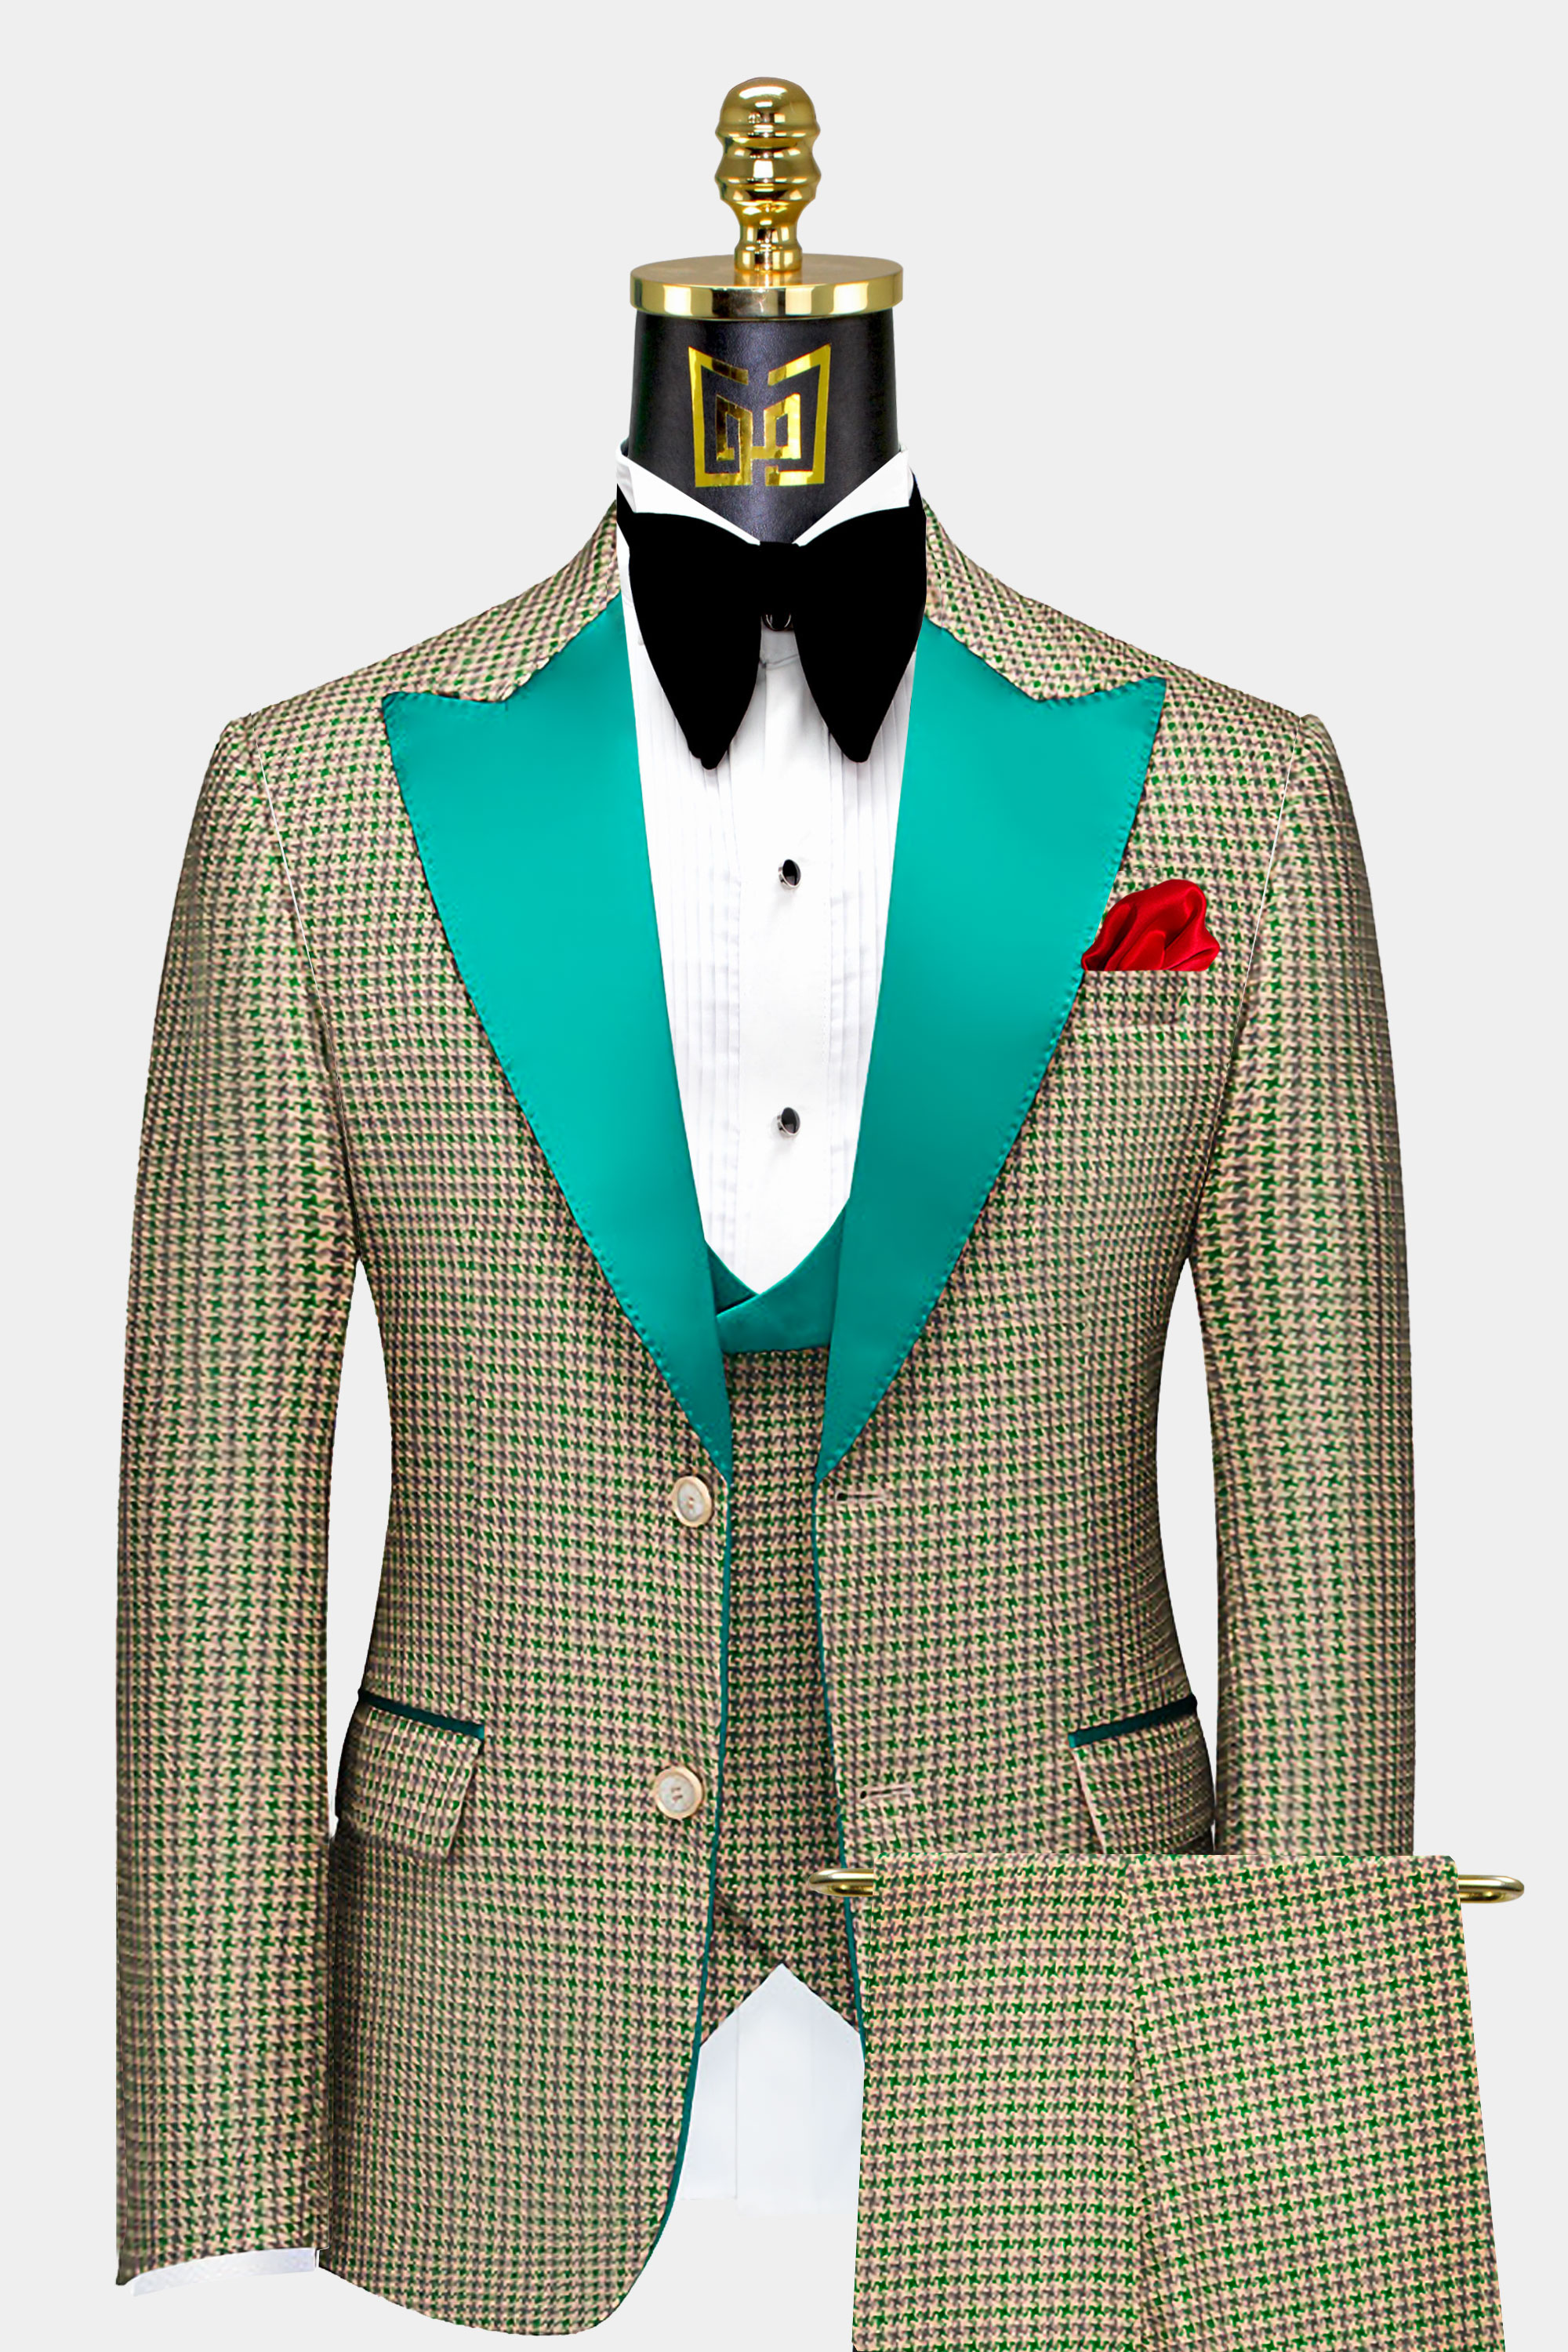 Houndstooth-Green-and-Khaki-Tuxedo-Groom-Prom-Wedding-Suit-from-Gentlemansguru.com